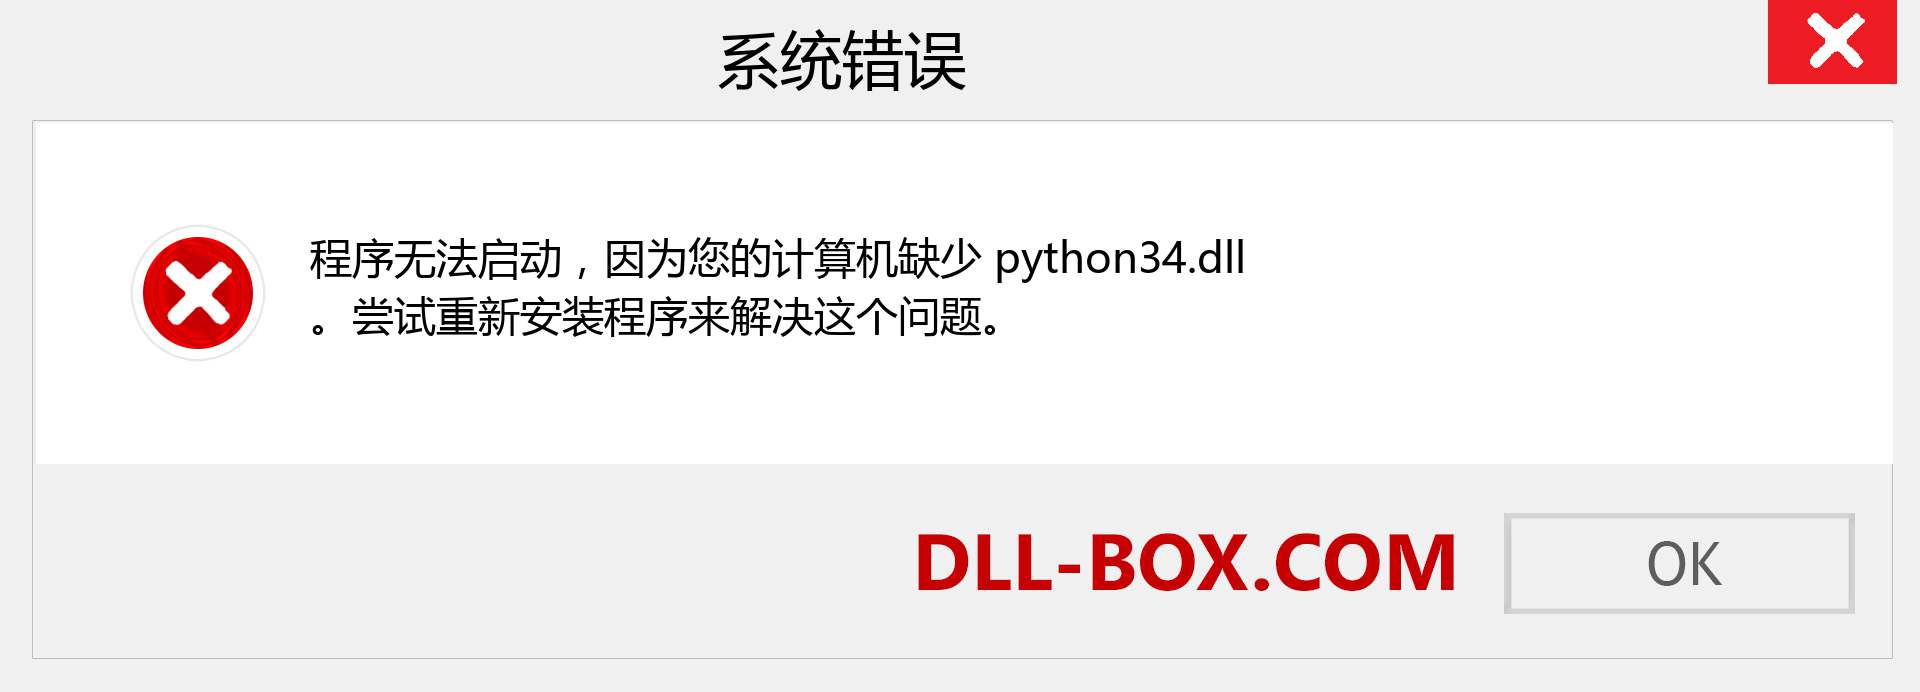 python34.dll 文件丢失？。 适用于 Windows 7、8、10 的下载 - 修复 Windows、照片、图像上的 python34 dll 丢失错误